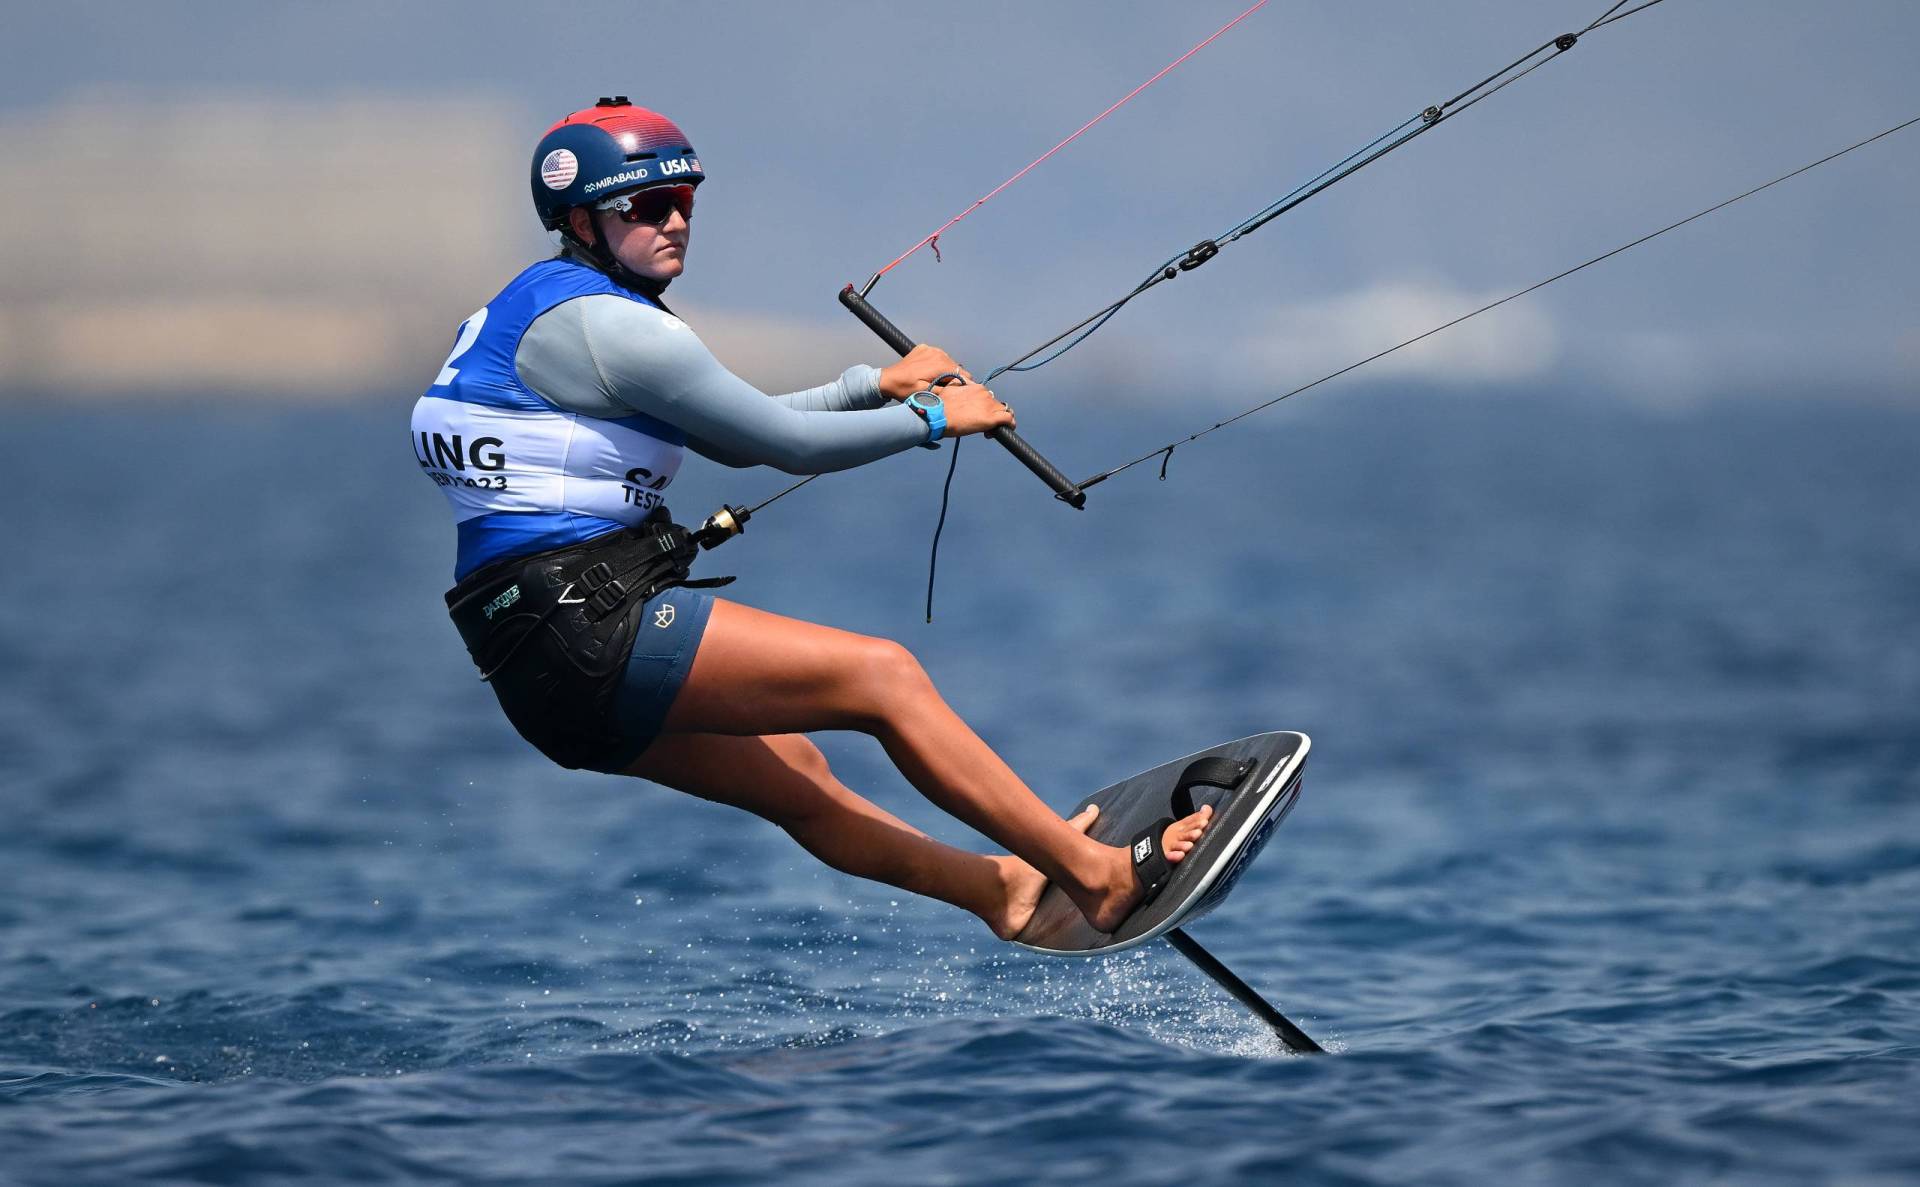 A tanned woman kite boarding in open water.